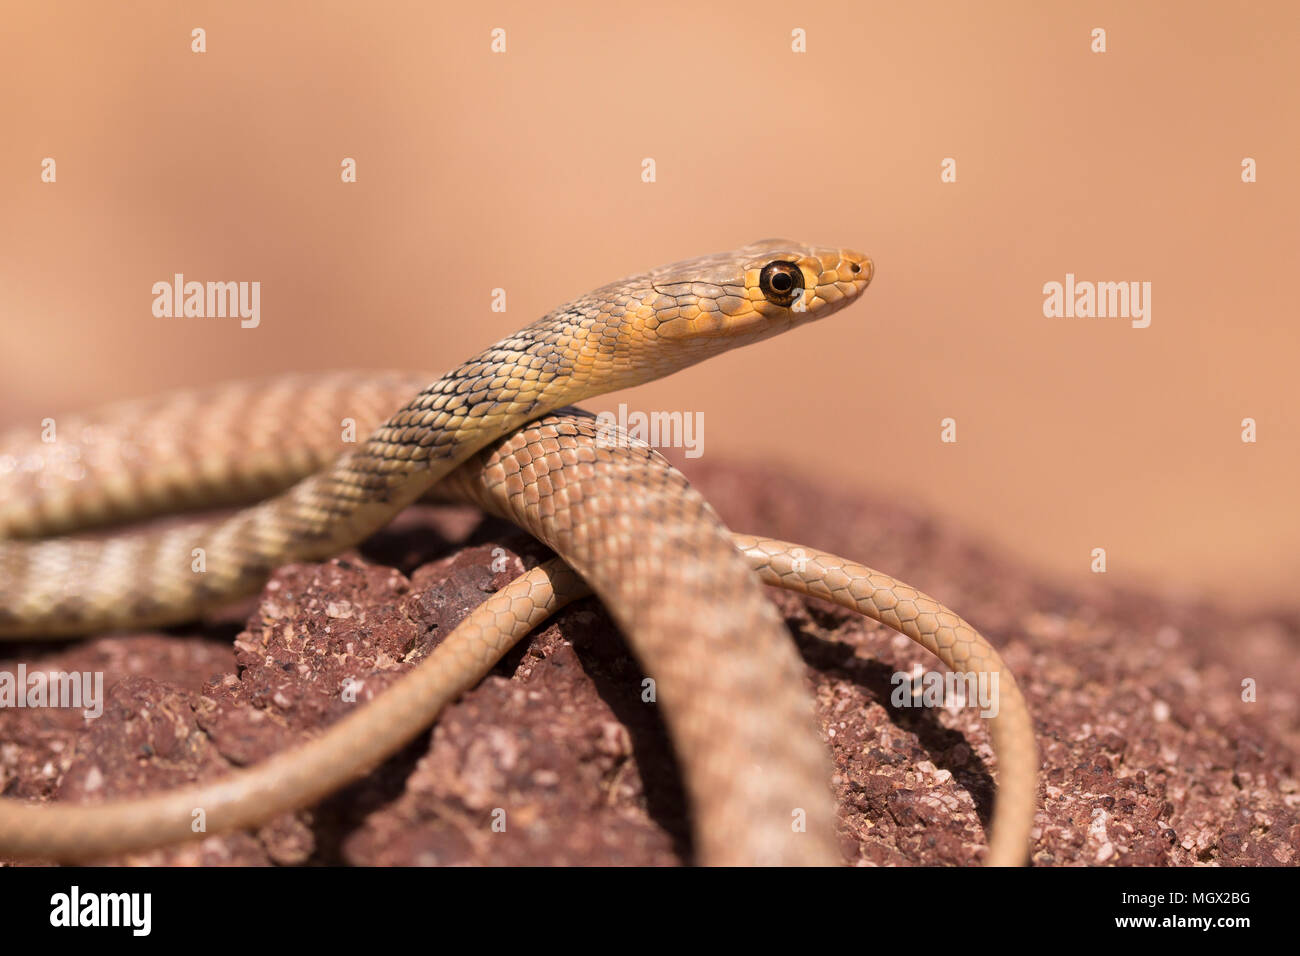 Braid serpiente o Jan Cliff Racer (Platyceps rhodorachis) es una especie de serpiente encontrada en Asia Central y el Oriente Medio. Fotografiado en Israel en ma Foto de stock